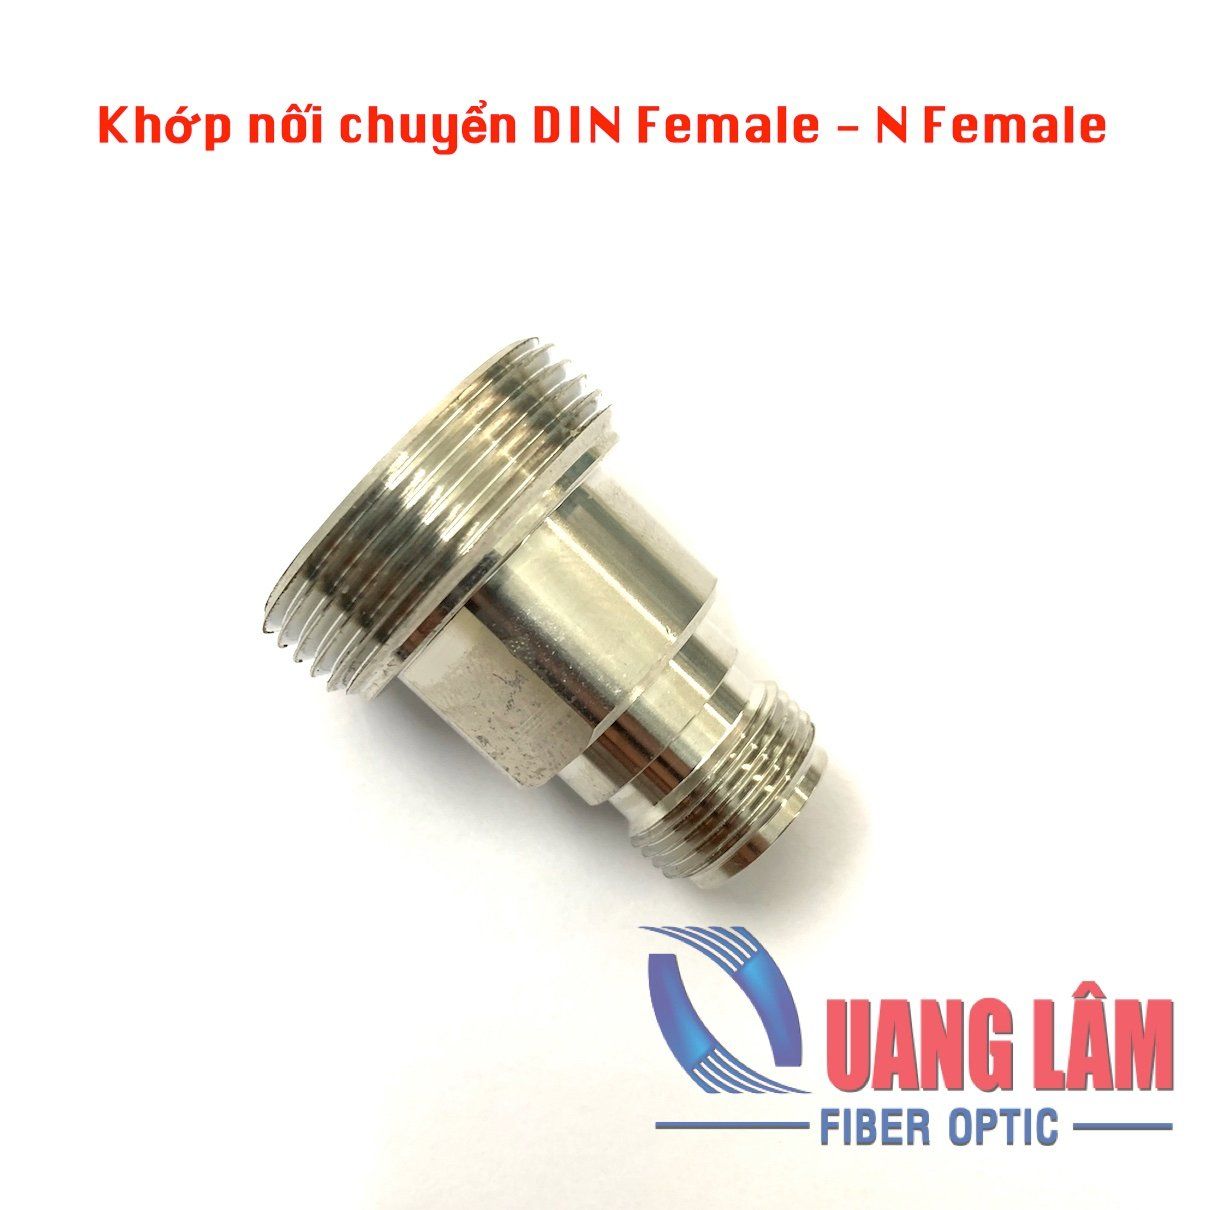 Khớp nối chuyển DIN Female sang N Female (Adapter DINF-NF KK)